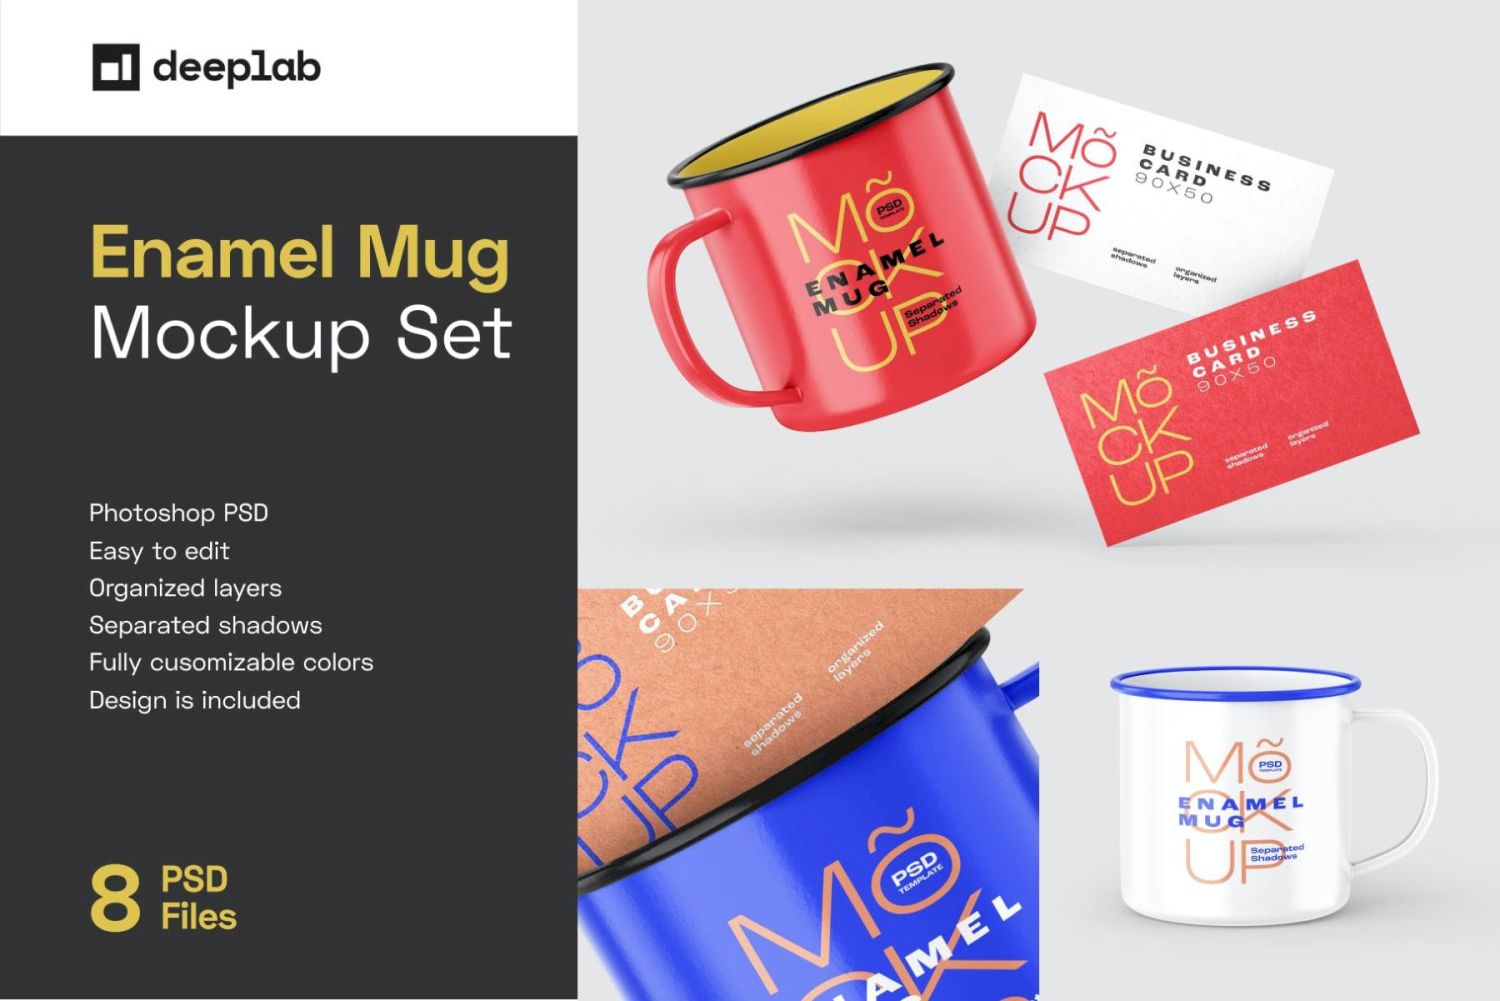 搪瓷杯样机套装 Enamel Mug Mockup Set插图